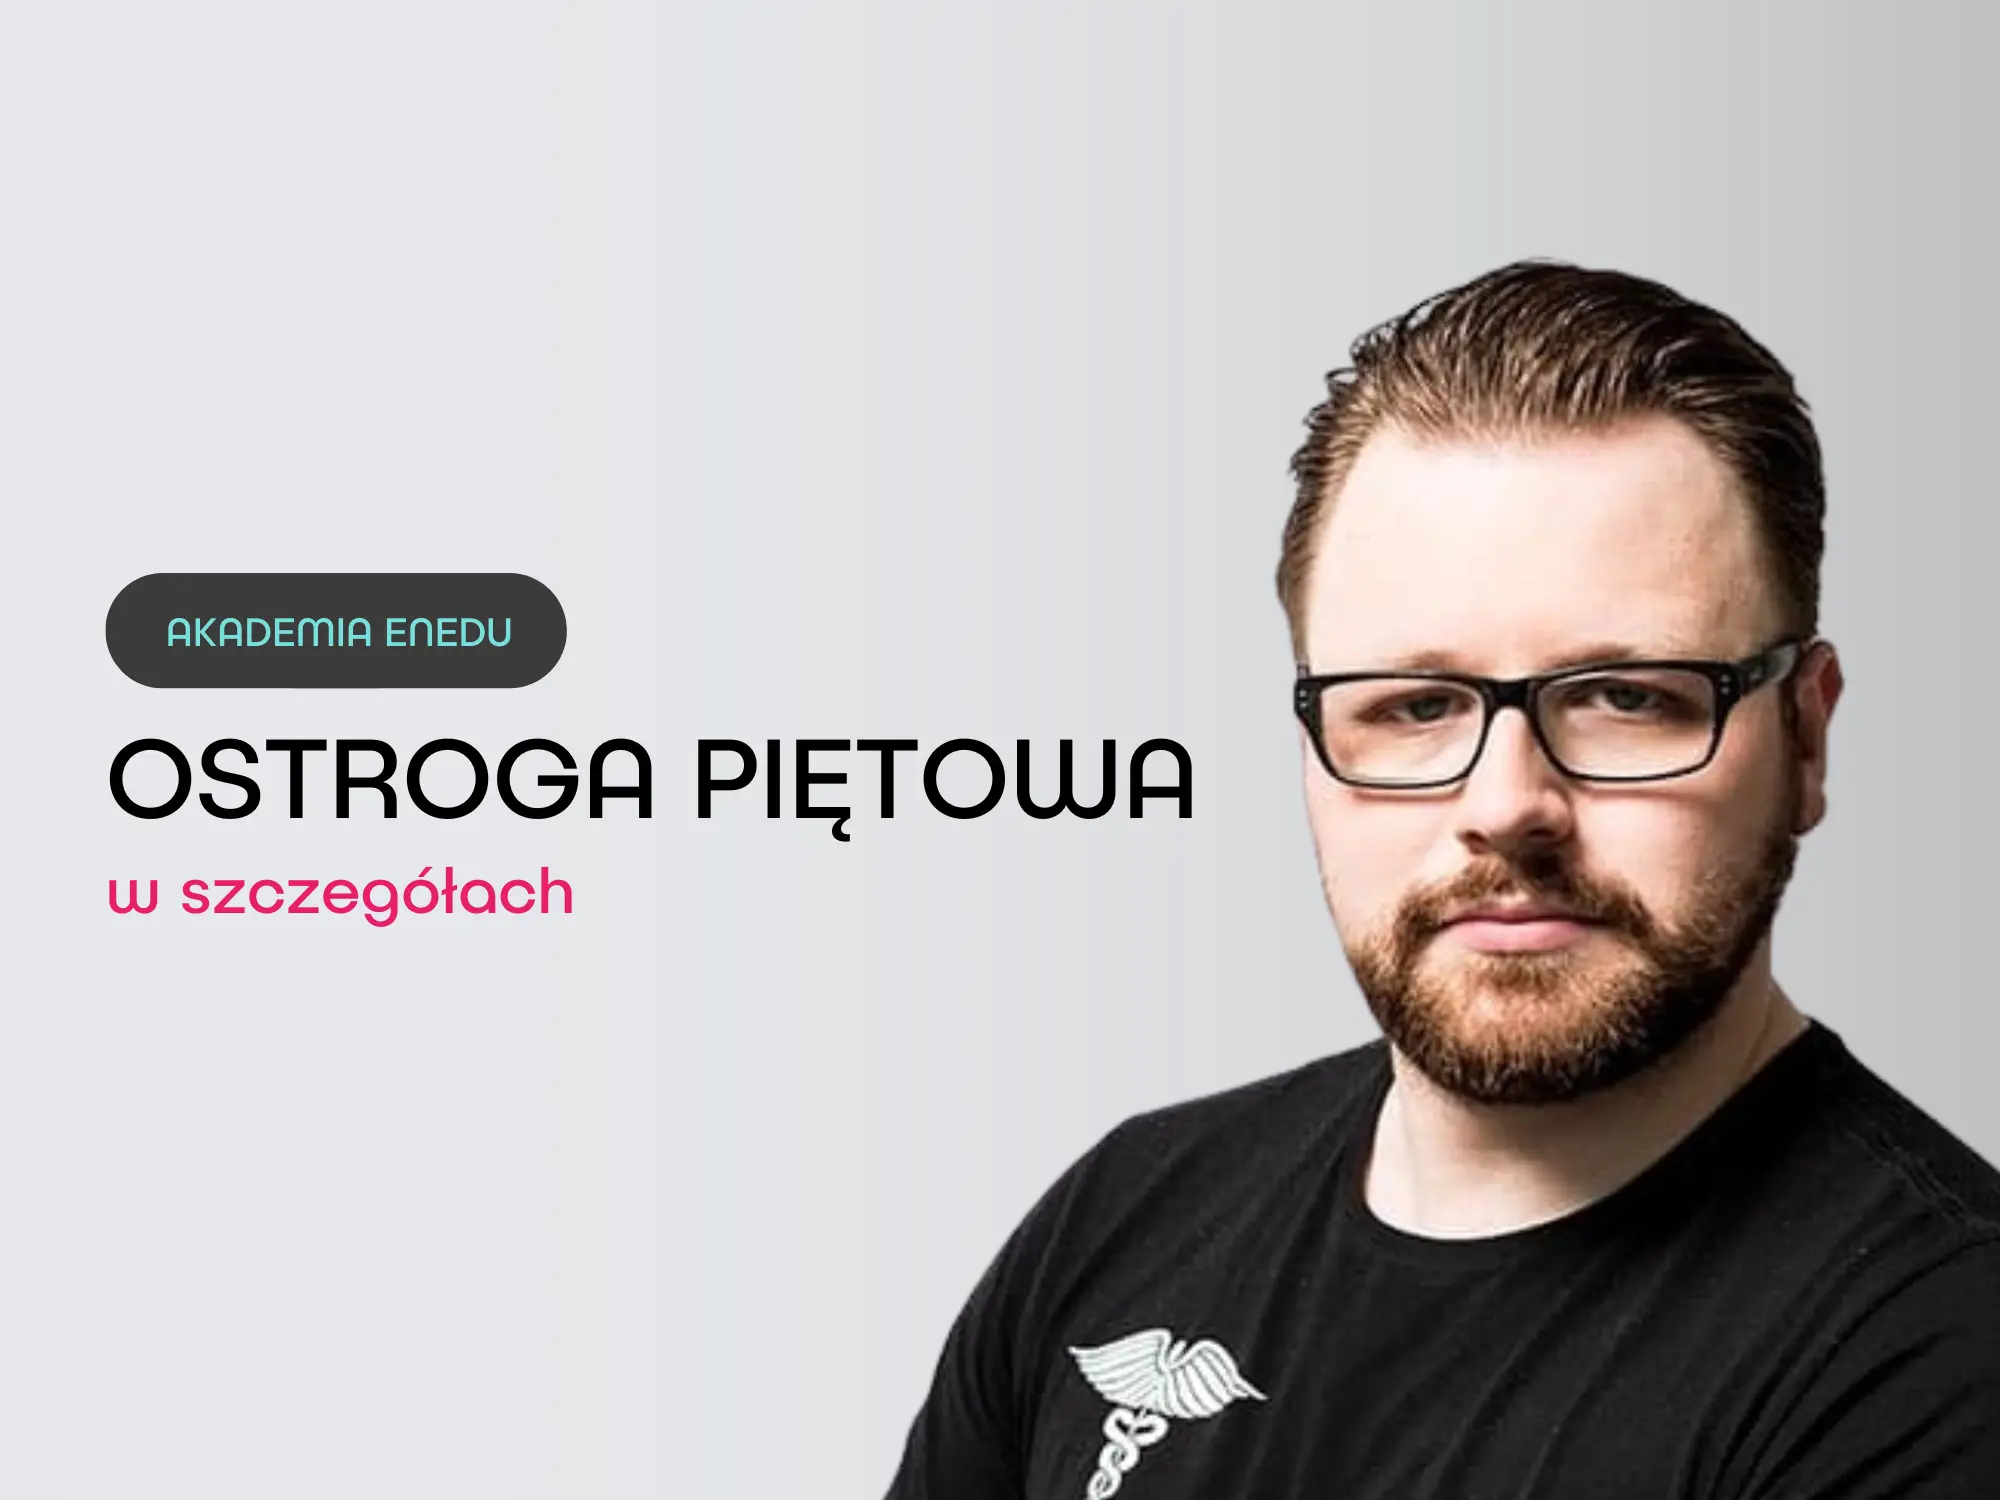 Webinar Ostroga piętowa Piotr Kostrzębski